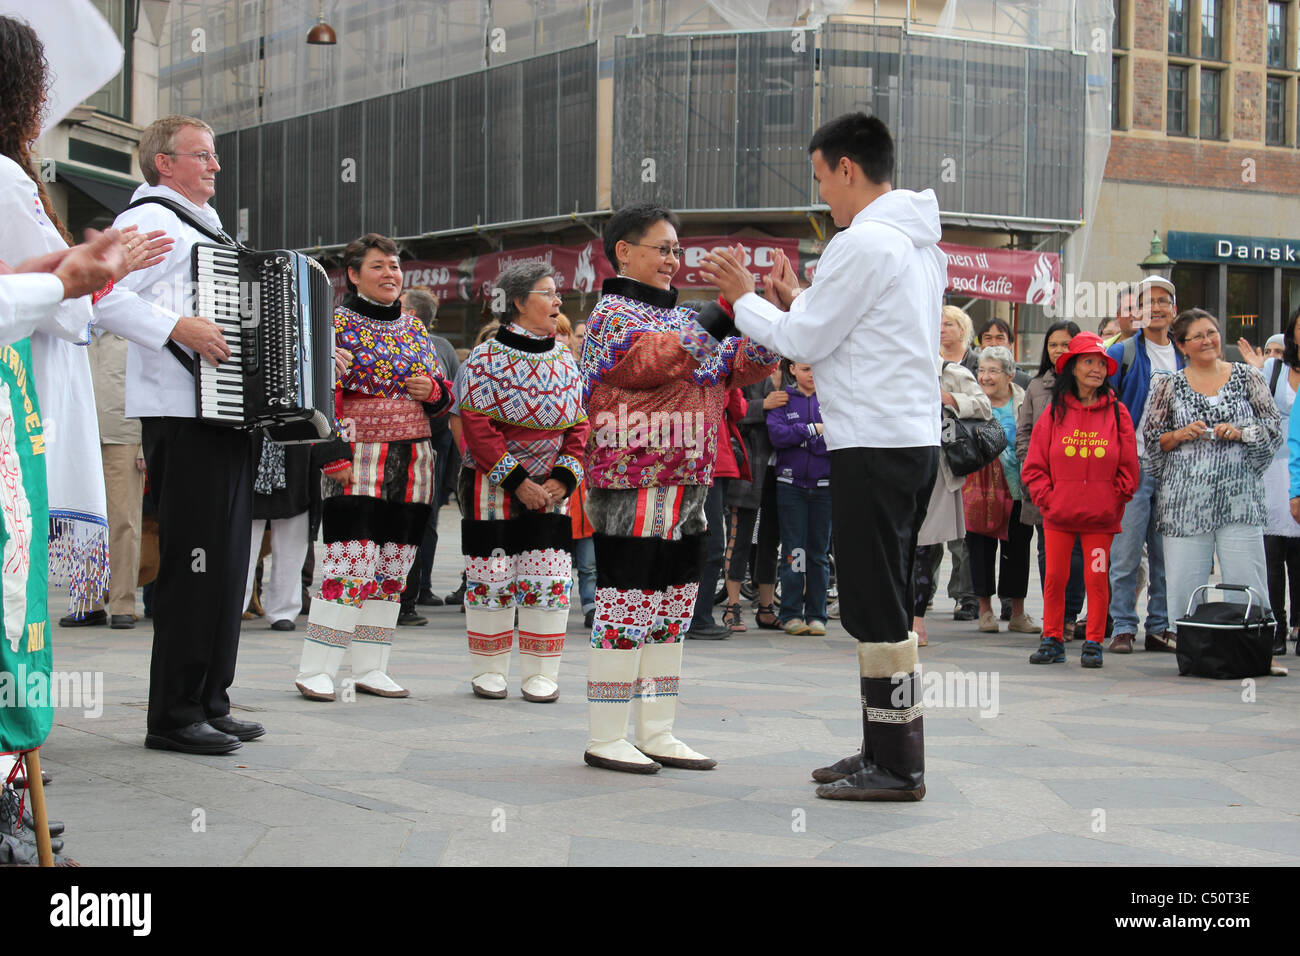 Gruppo di danza groenlandese che si esibisce nelle strade di Copenhagen, Danimarca Foto Stock